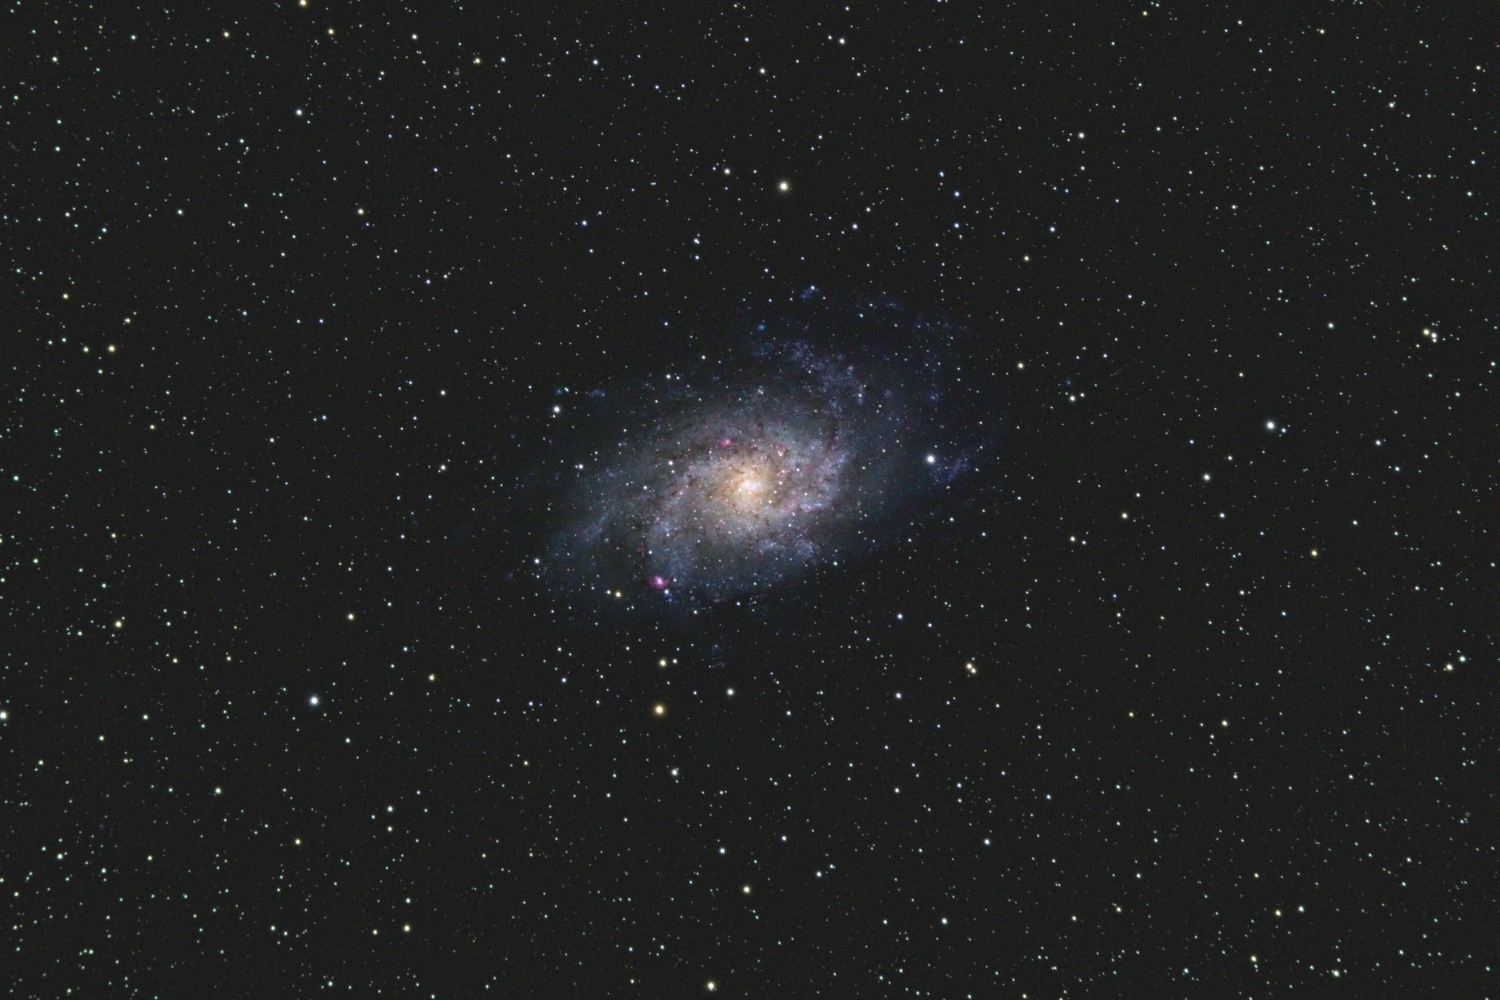 Galaxie im Dreieck - M33 M 33